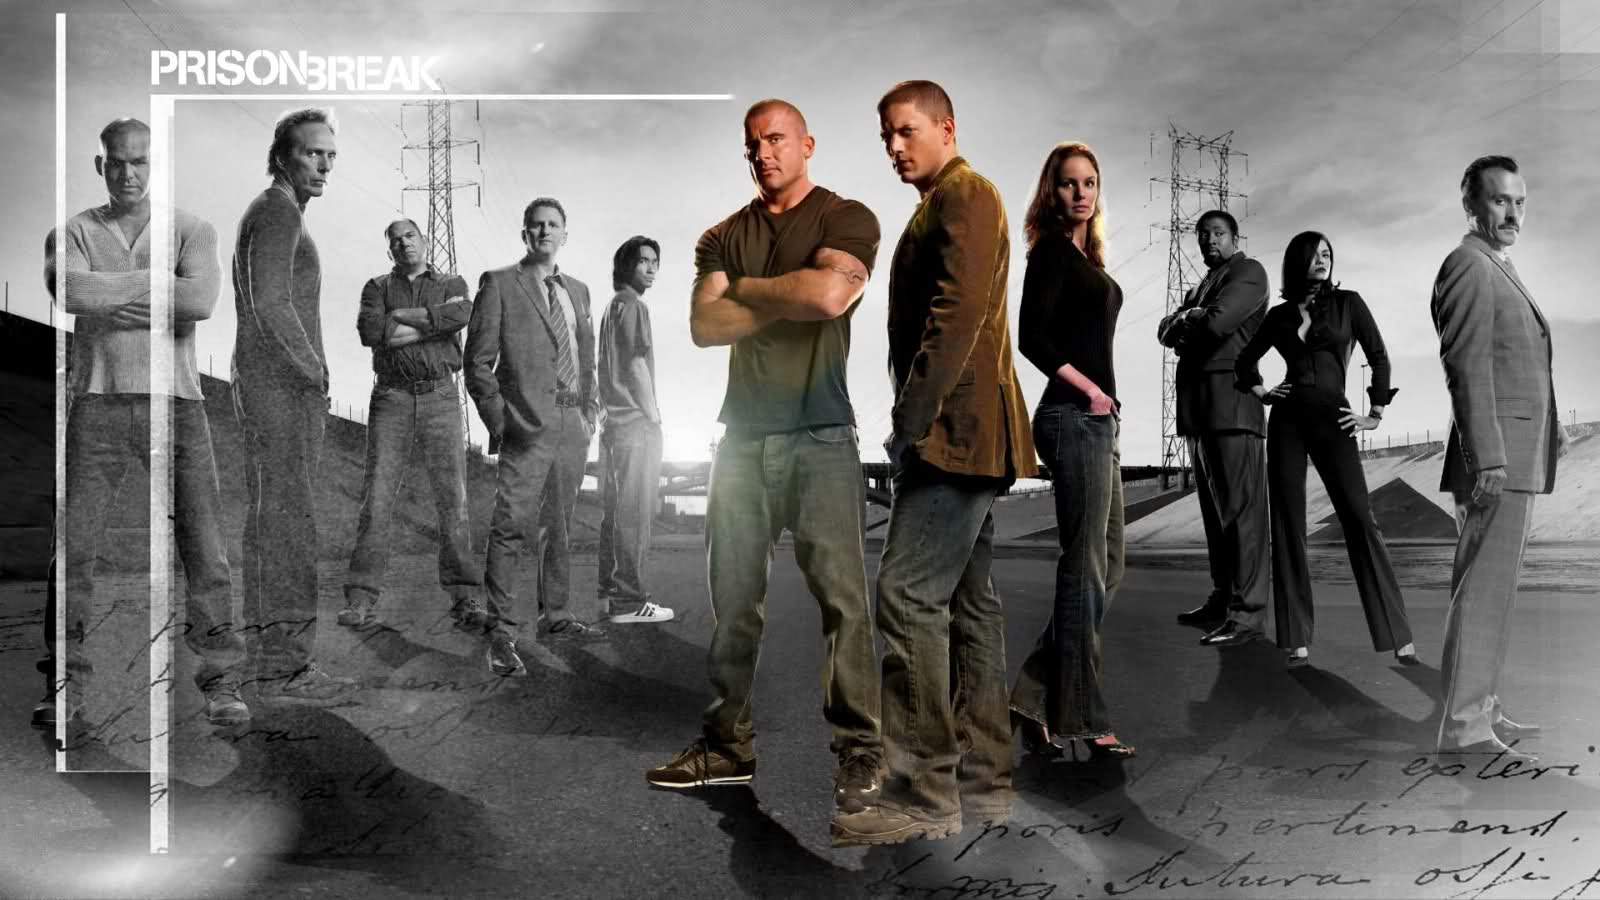 Prison Break Hd Wallpapers New Season Hd Images, Hd - Prison Break Season 1 - HD Wallpaper 